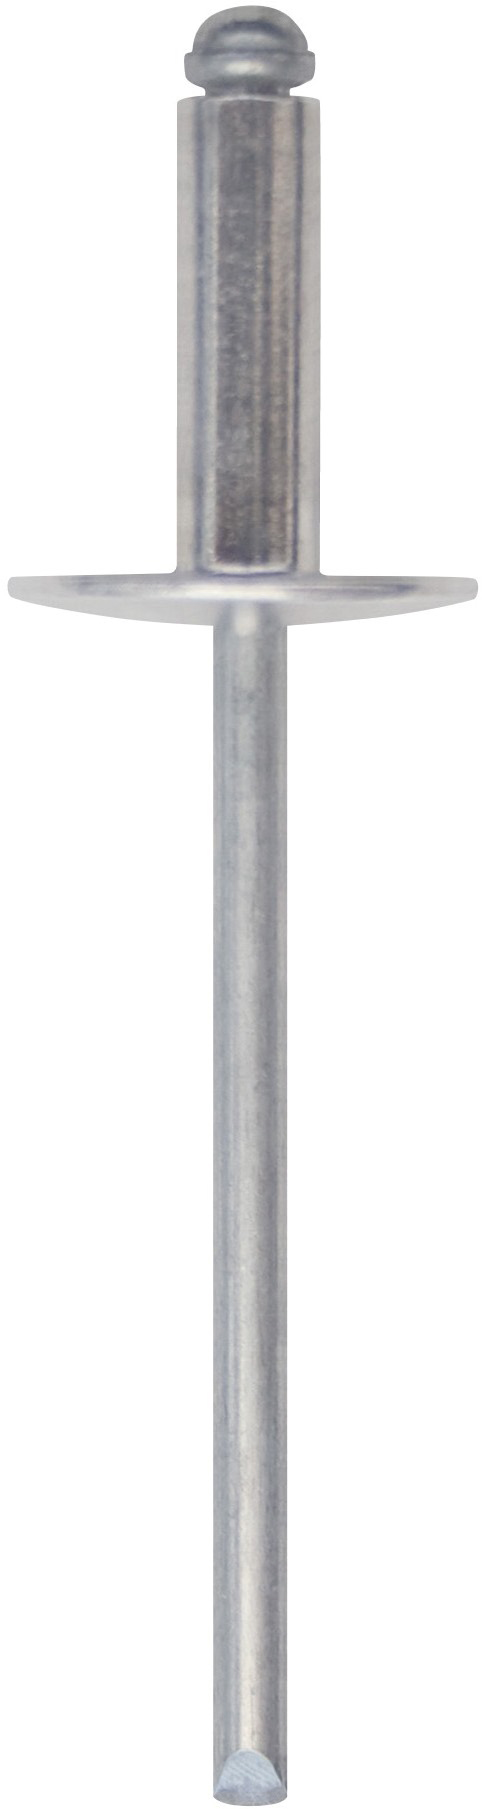 Cod. 0300104803000 - RIVEX Rivetto in alluminio con testa larga